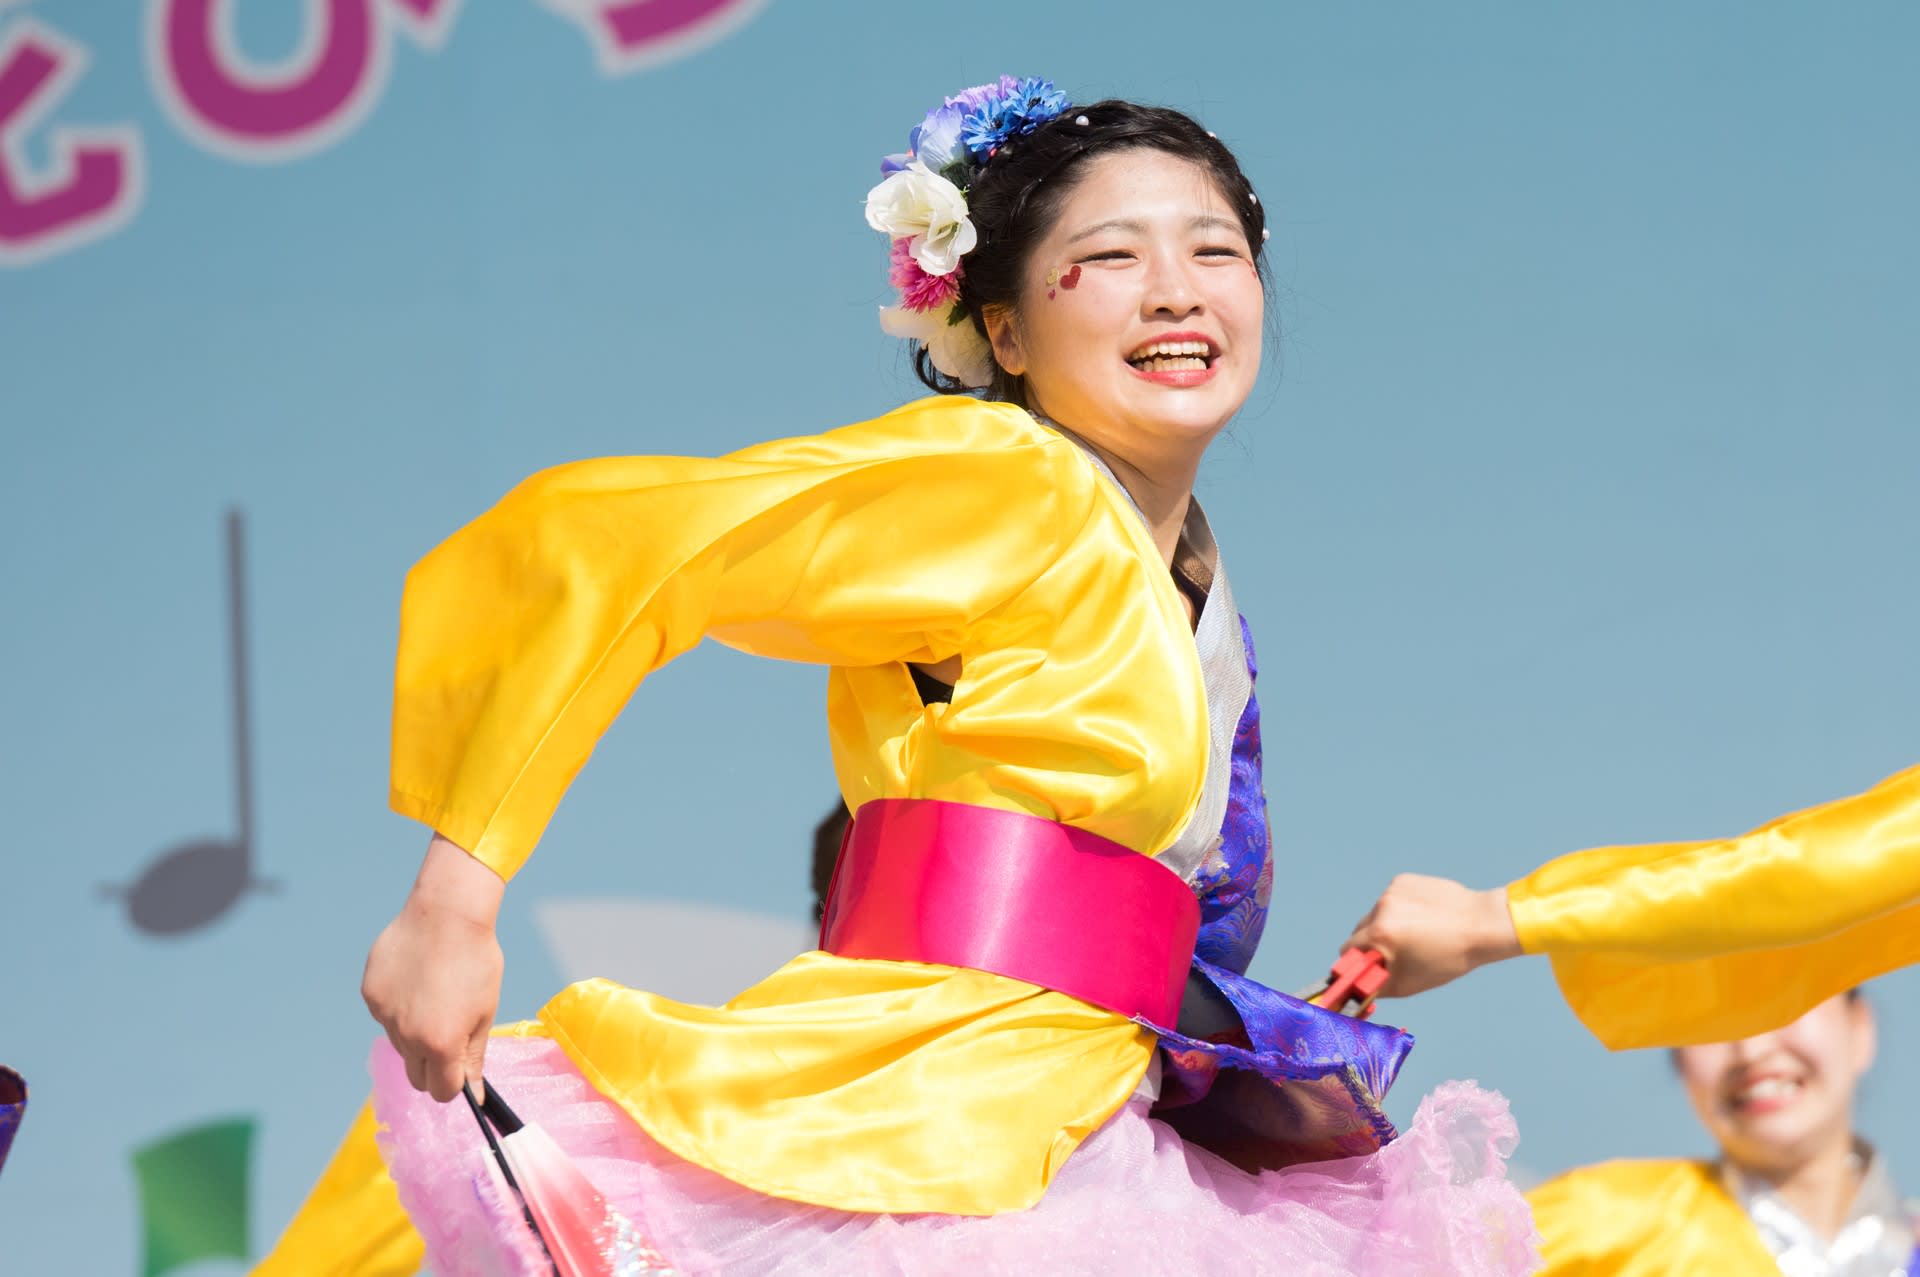 ２０１９ひろしまフラワーフェスティバル 安田女子高等学校ダンス部2 めぐる季節と共に 気ままな散策